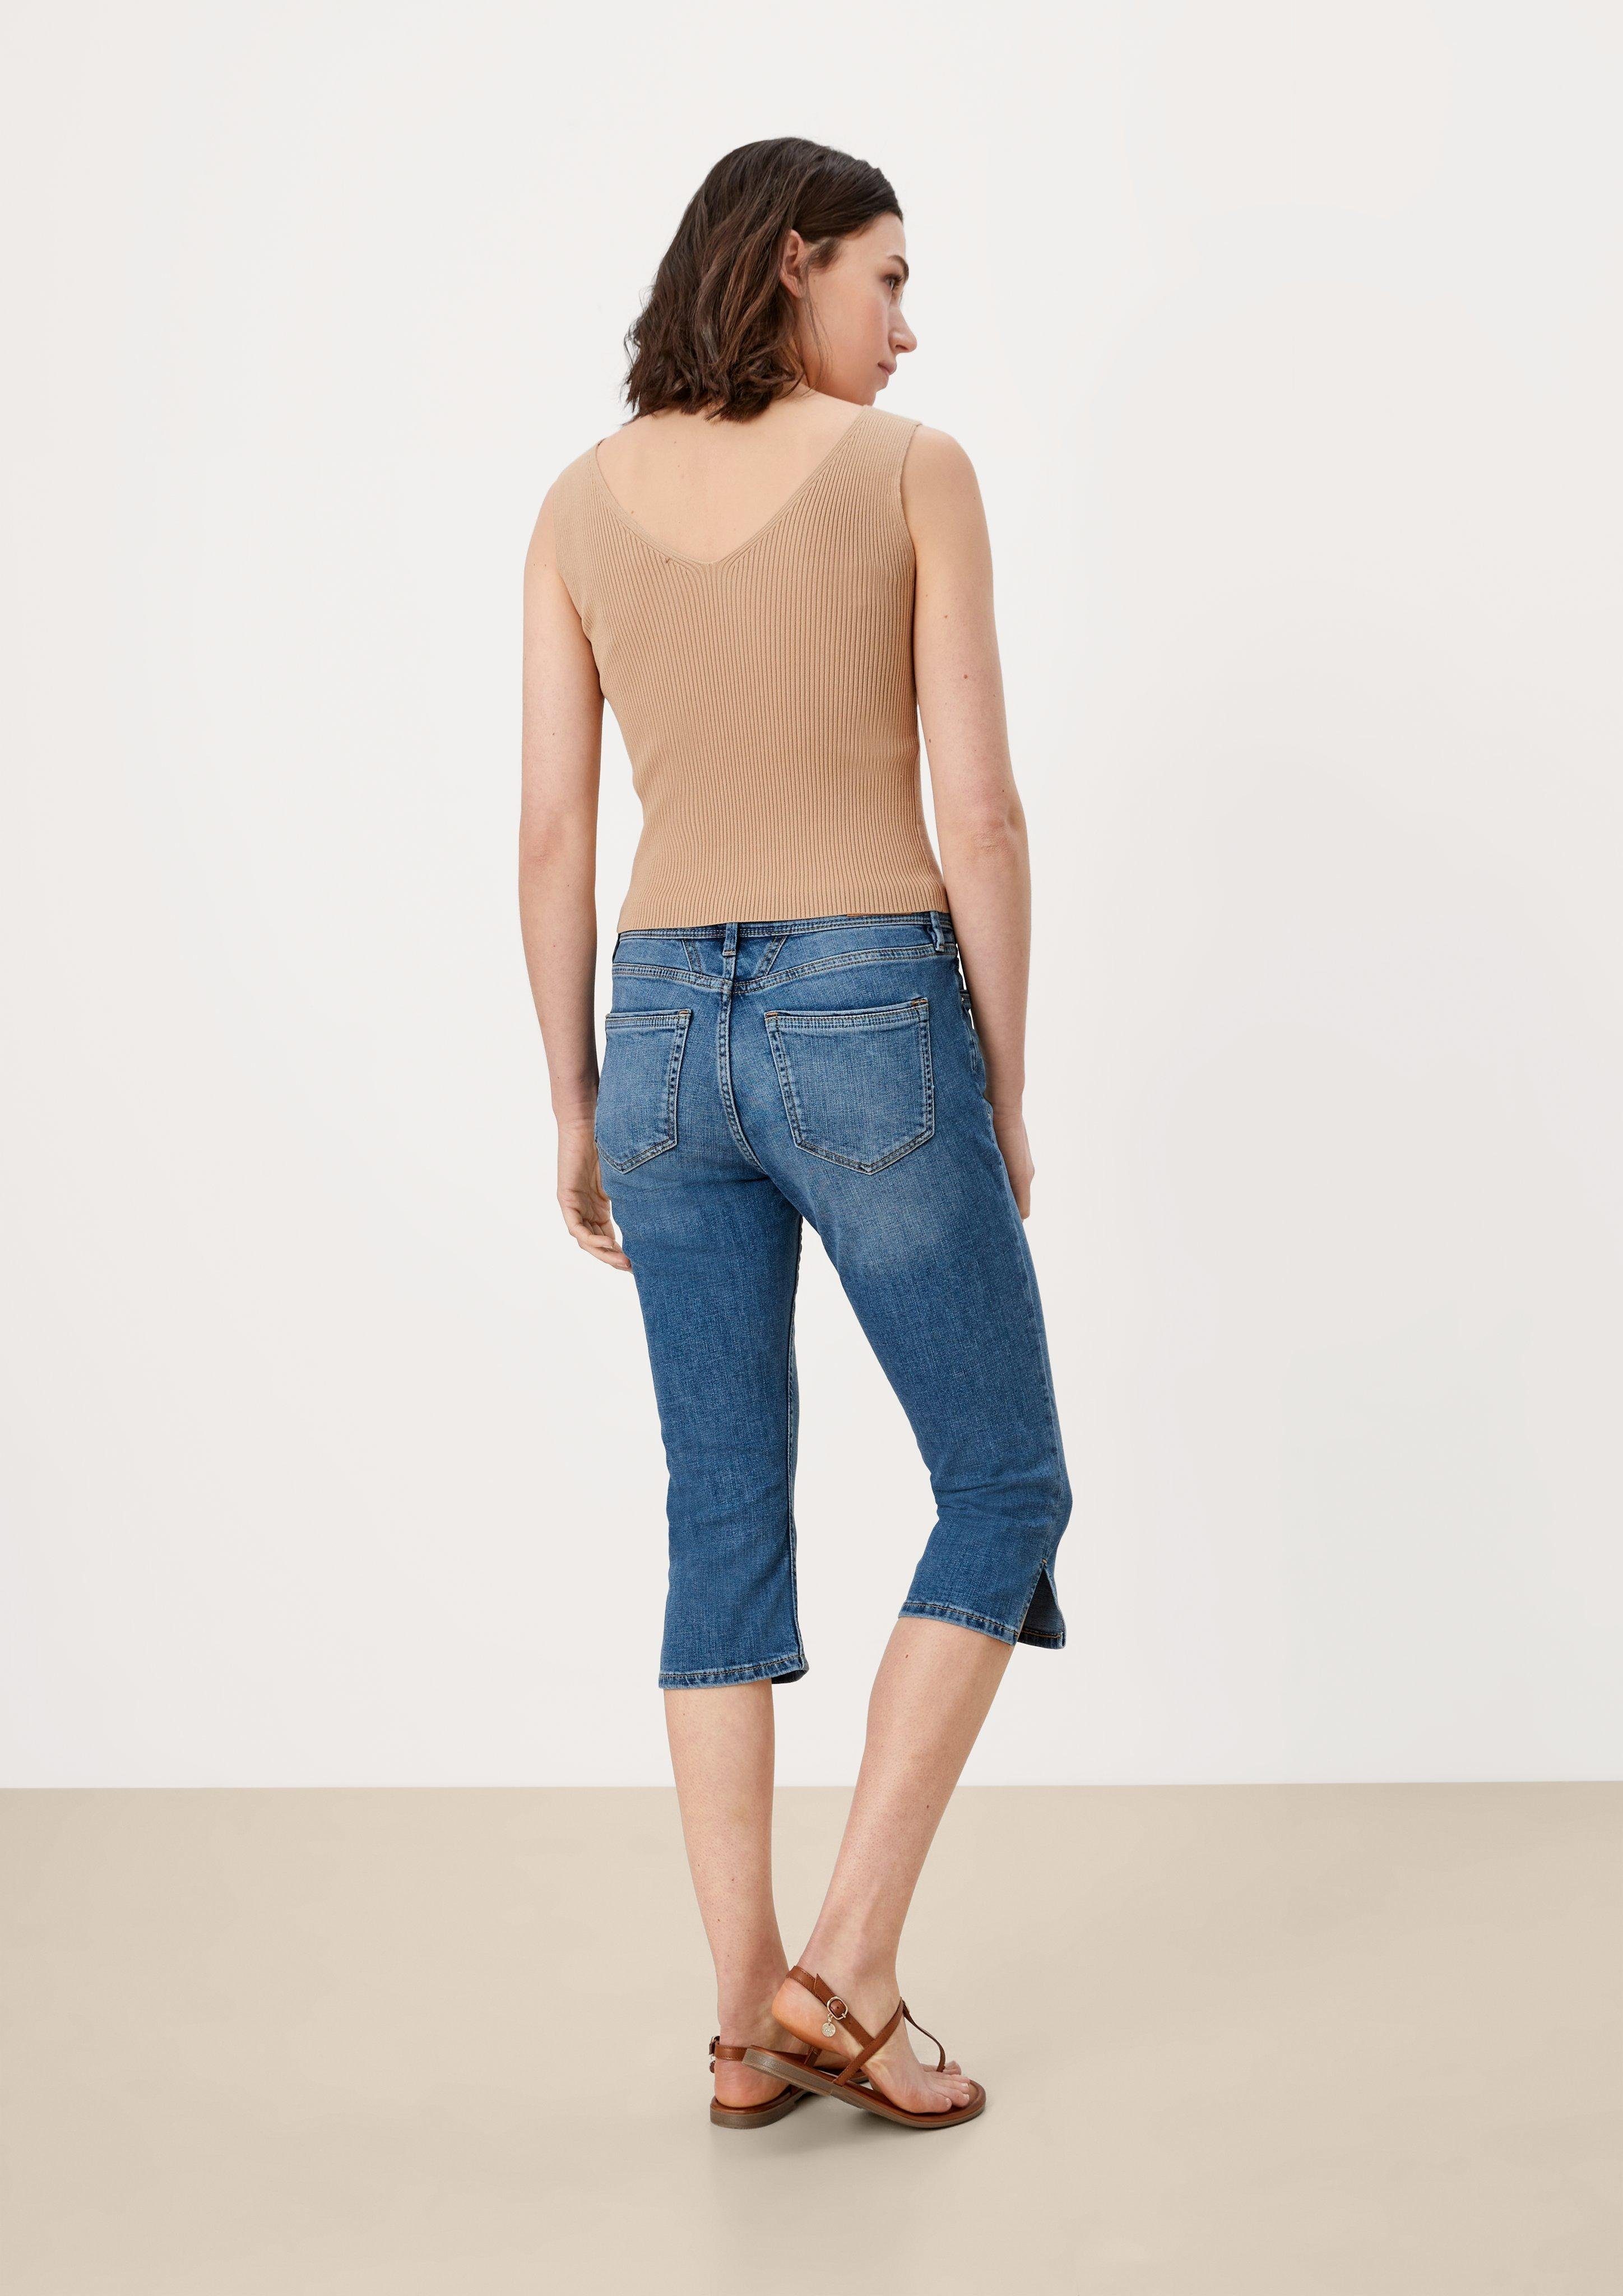 Waschung, 7/8-Jeans Leder-Patch blue s.Oliver